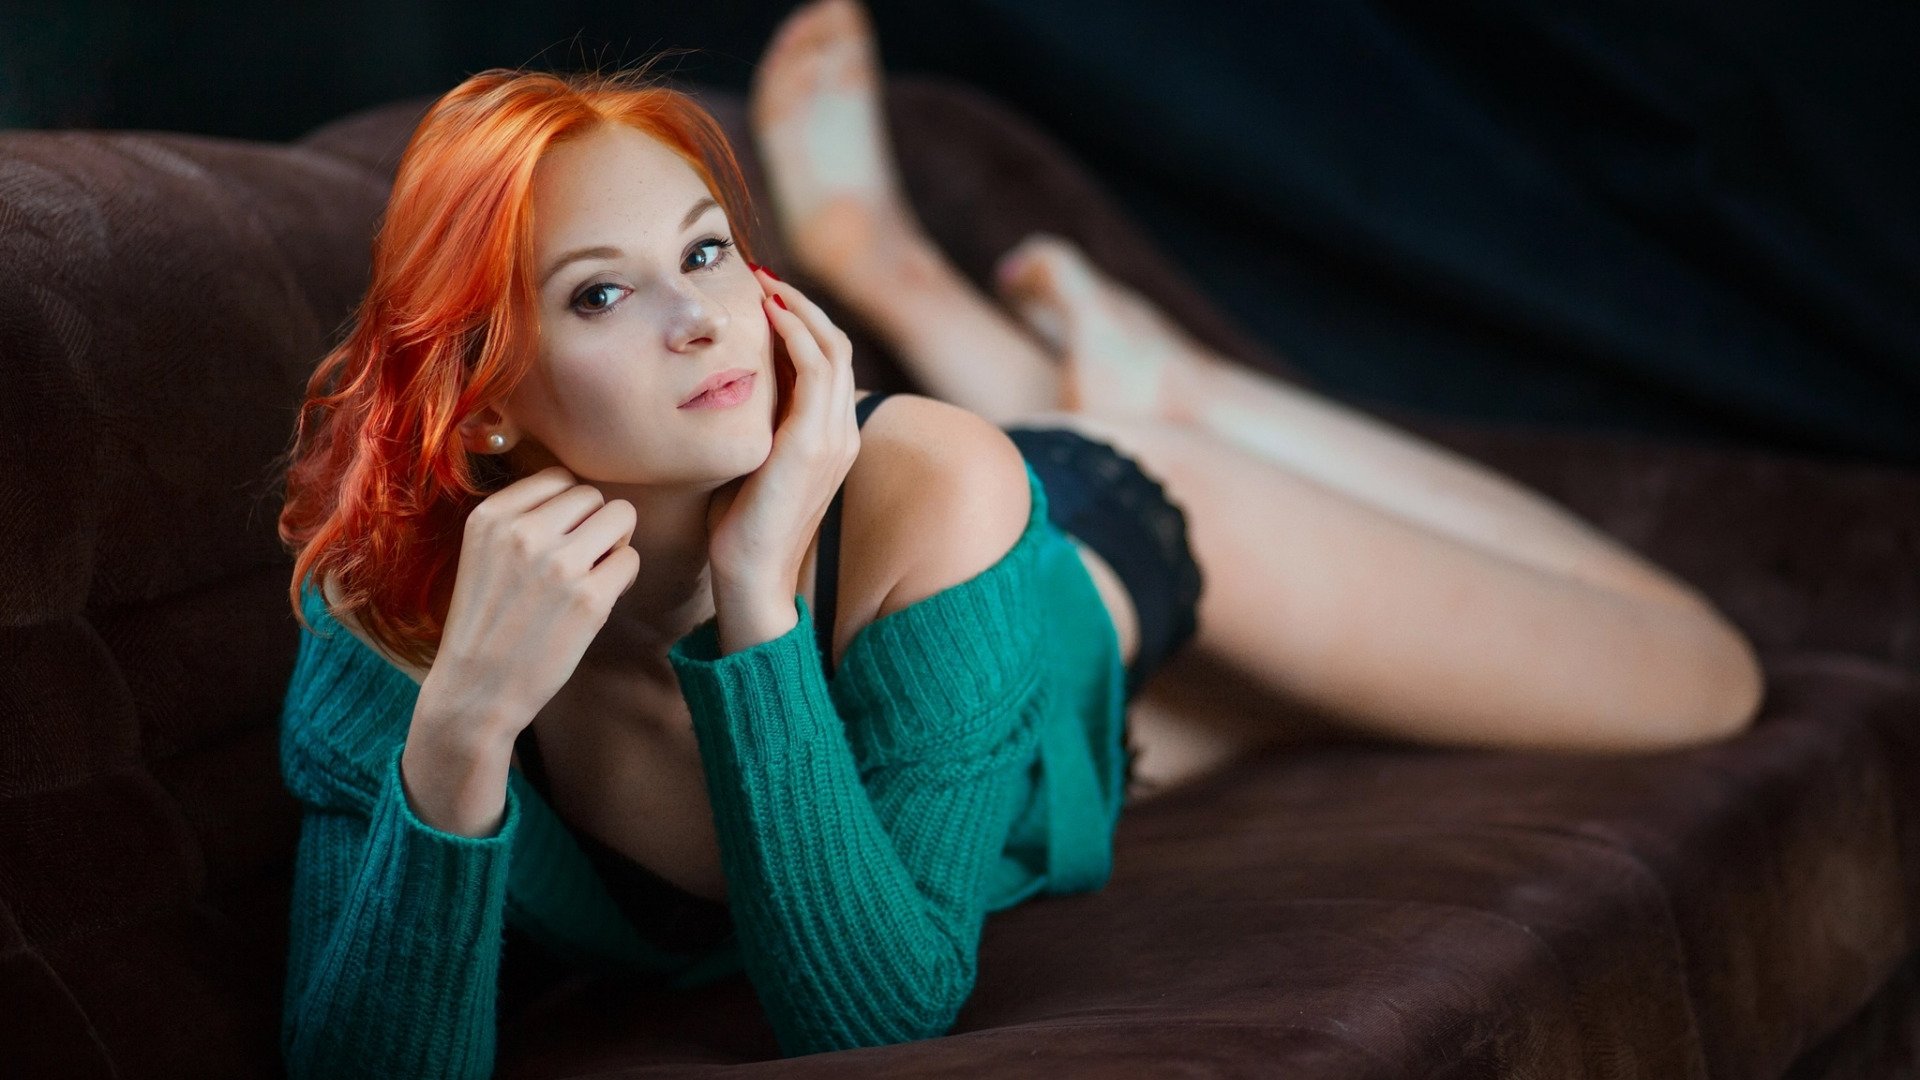 Смотреть онлайн Выебал зрелую русскую даму с рыжими волосами бесплатно